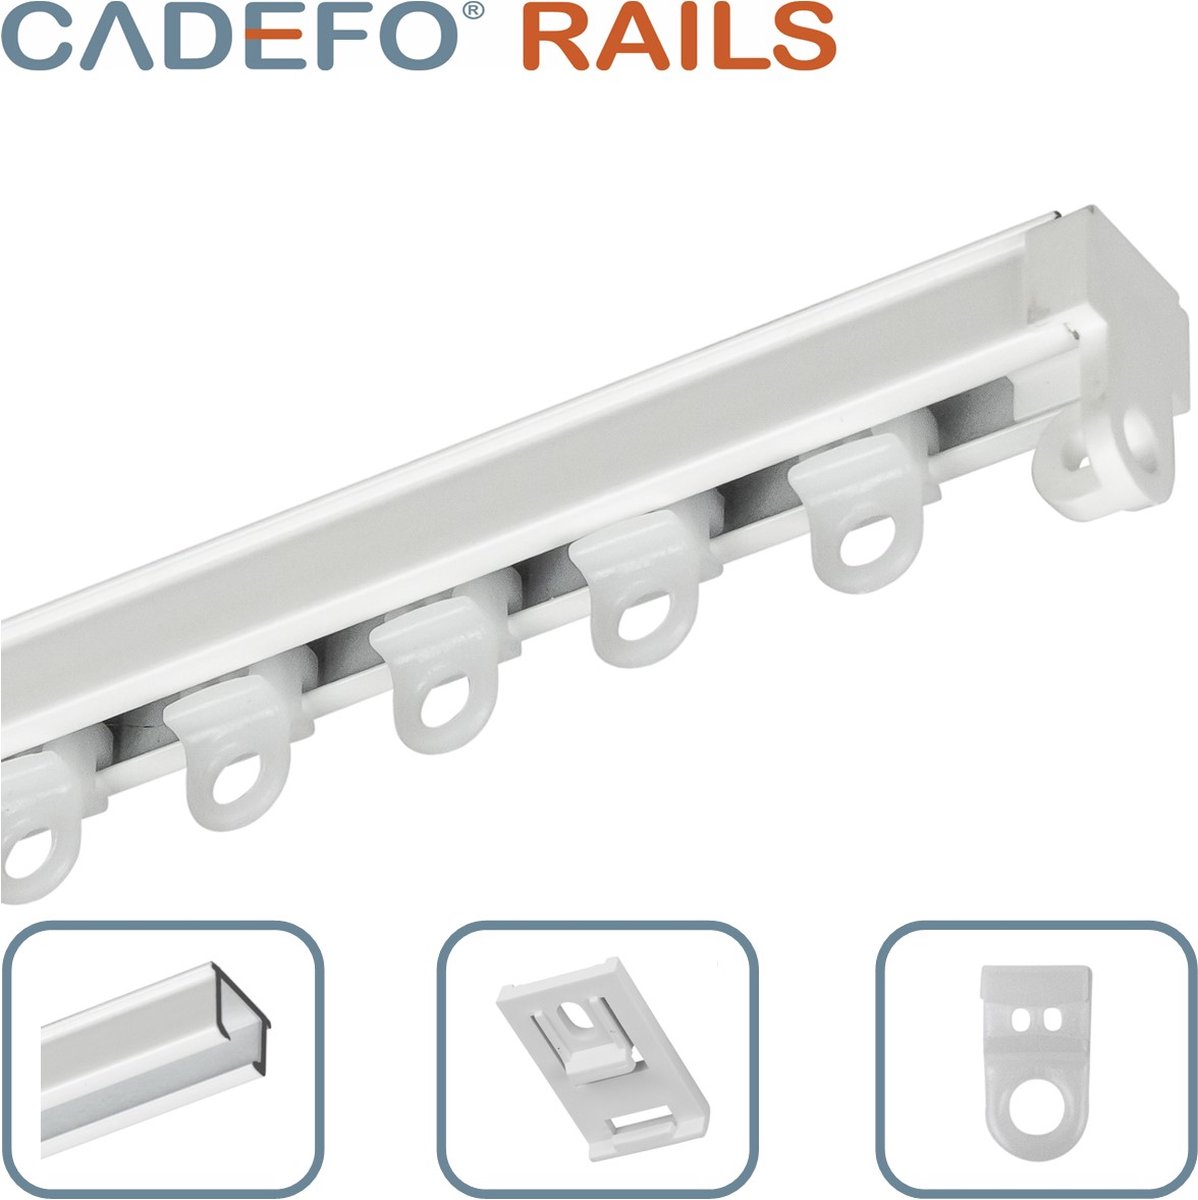 CADEFO RAILS (151 - 200 cm) Gordijnrails - Compleet op maat! - UIT 1 STUK - Leverbaar tot 6 meter - Plafondbevestiging - Lengte 163 cm